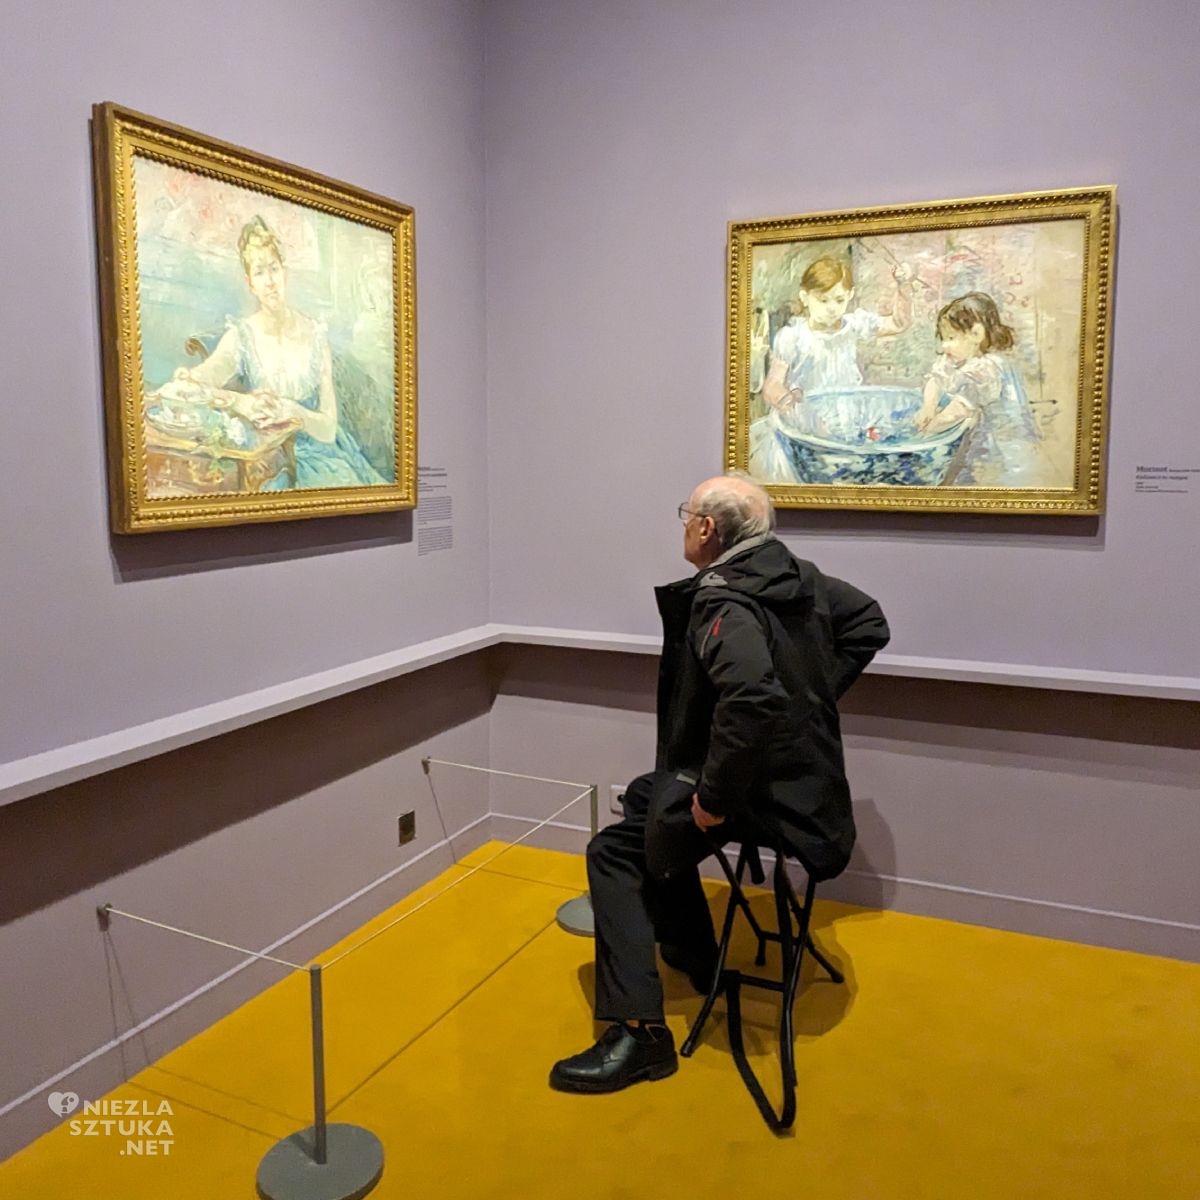 Relacja z Paryża, Berthe Morisot, Paryż, wystawy w Paryżu, muzea w Paryżu, sztuka francuska, niezła sztuka